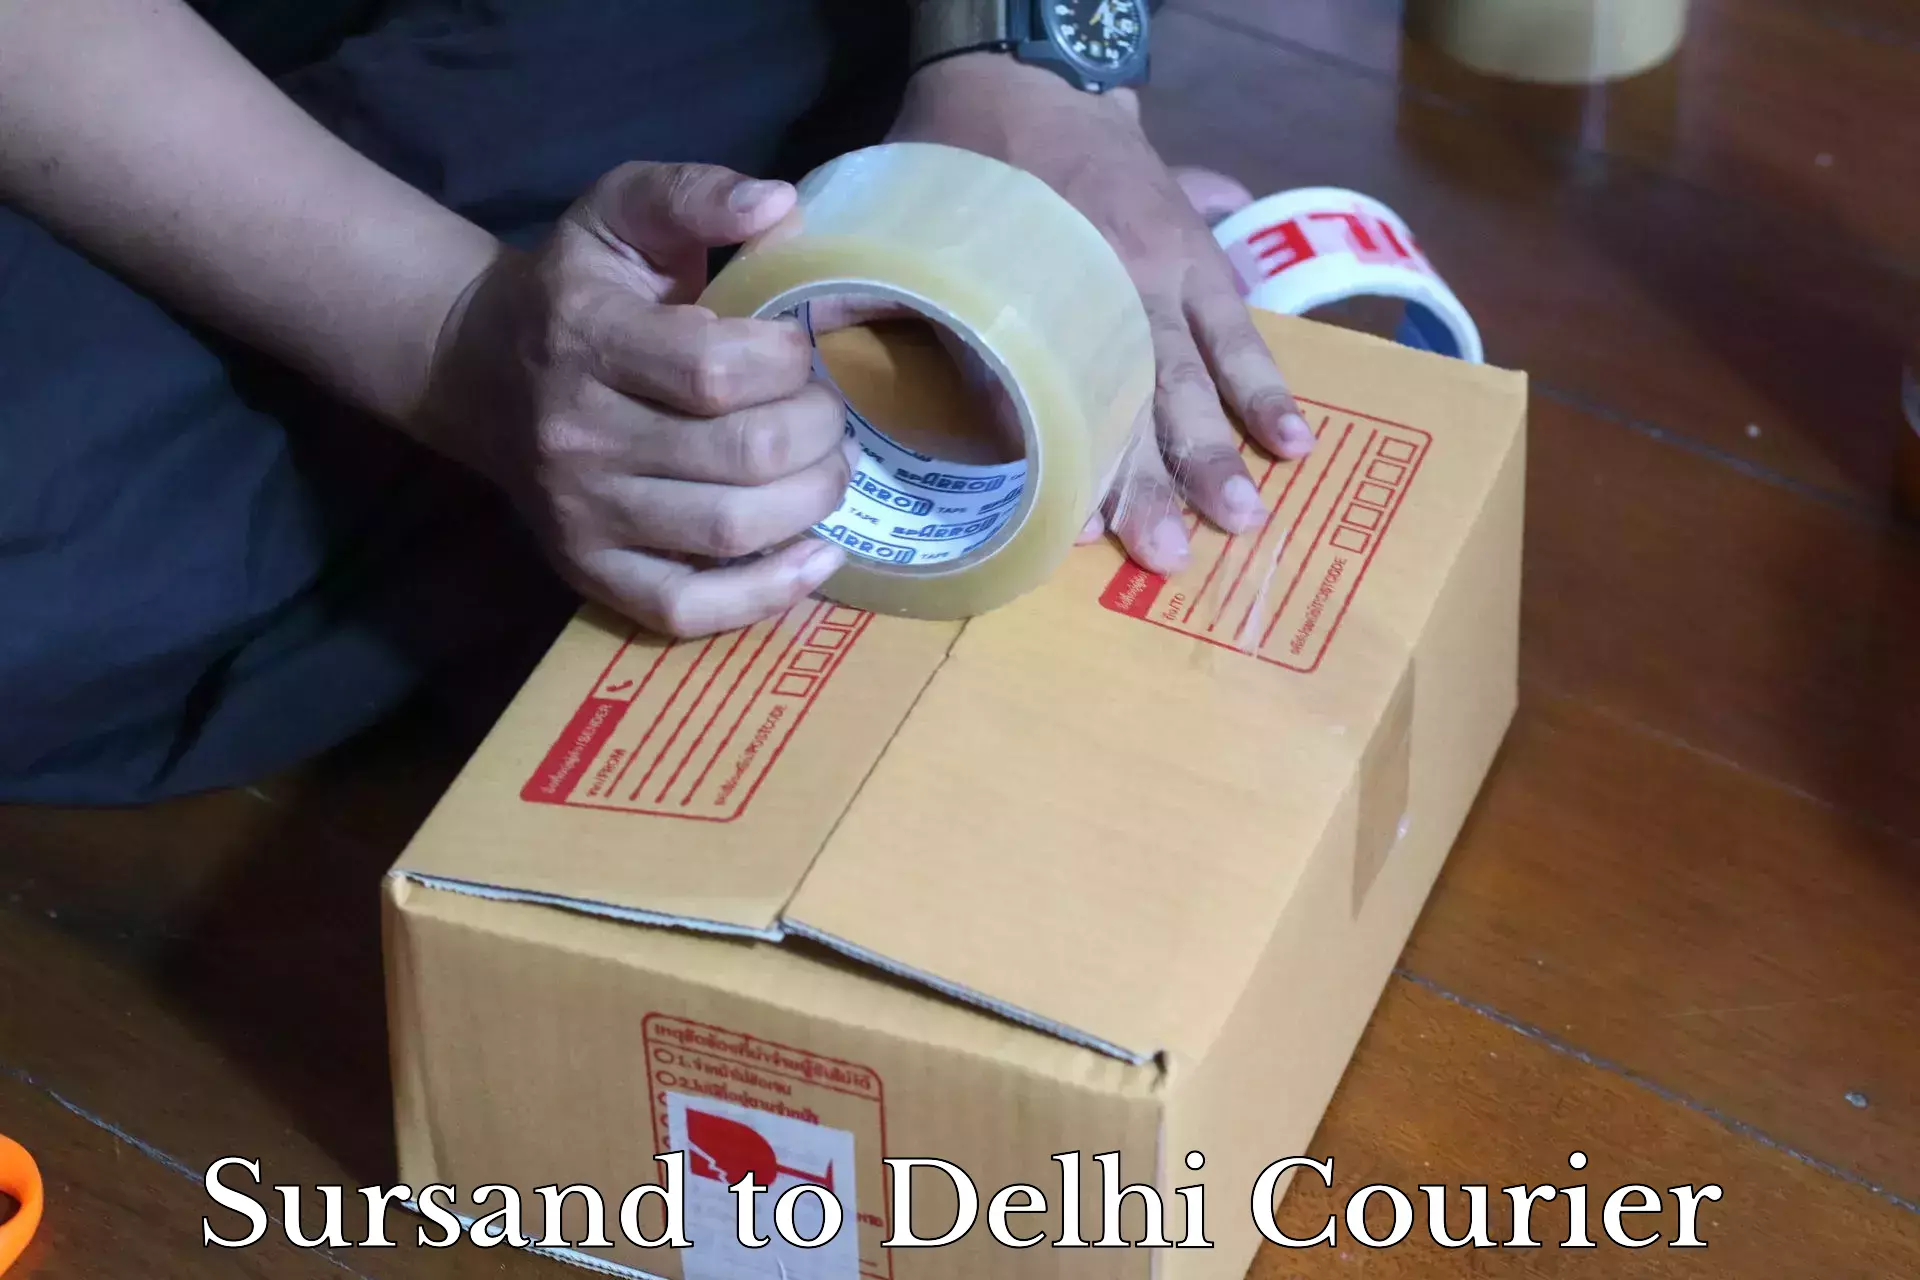 Express postal services Sursand to Jamia Millia Islamia New Delhi